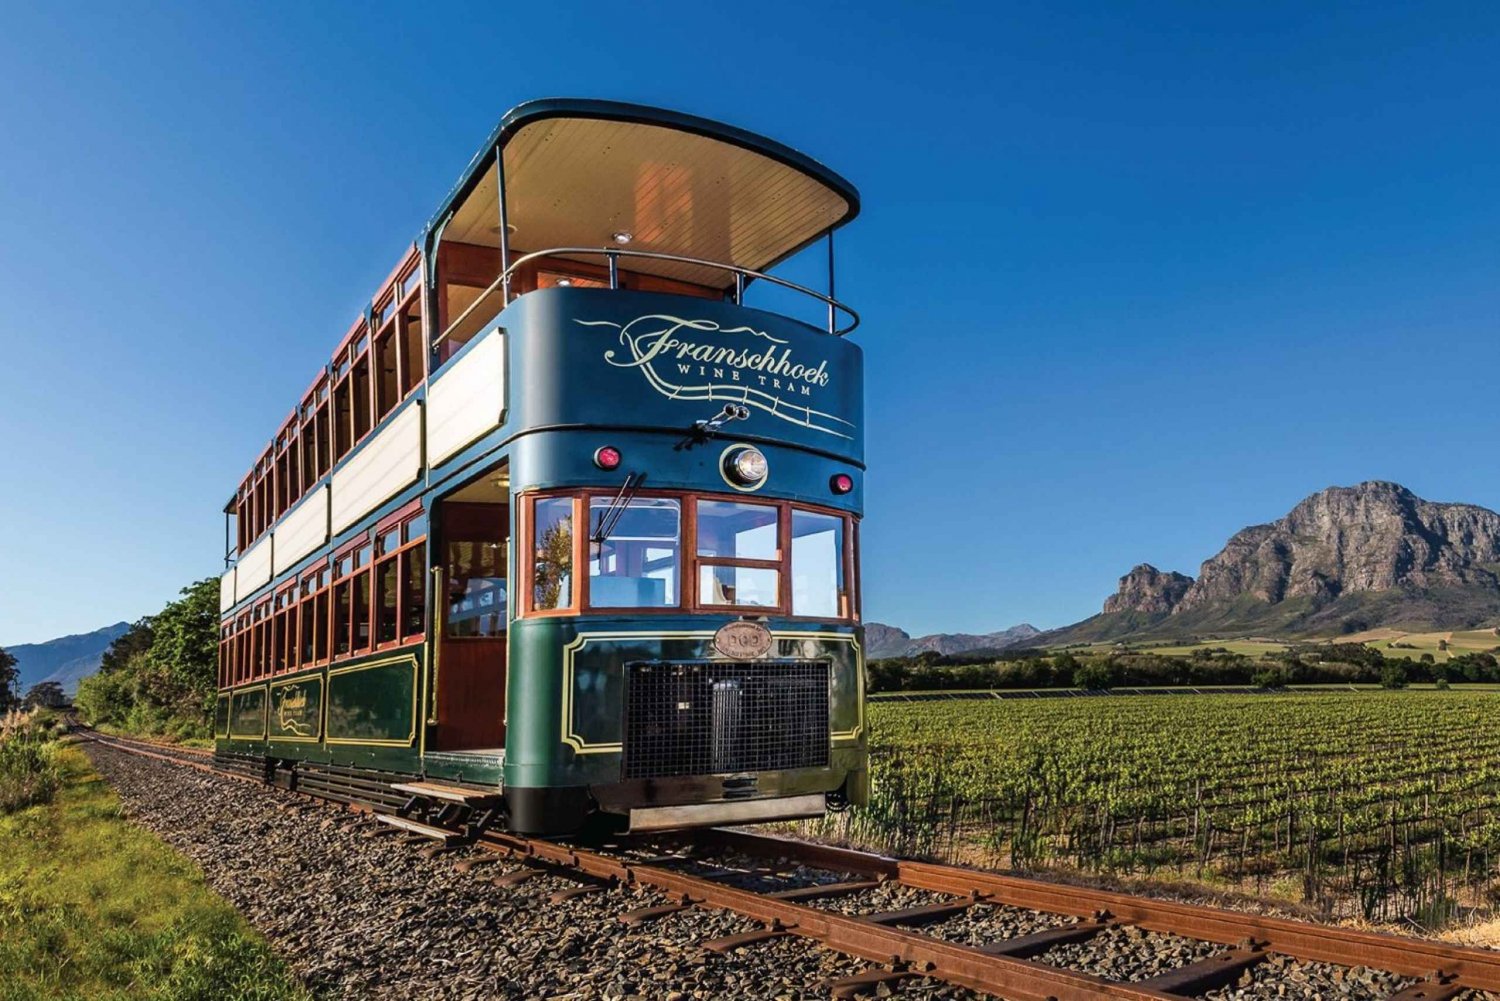 Depuis le Cap : Le tramway du vin de Franschhoek (Hop-on Hop-off)